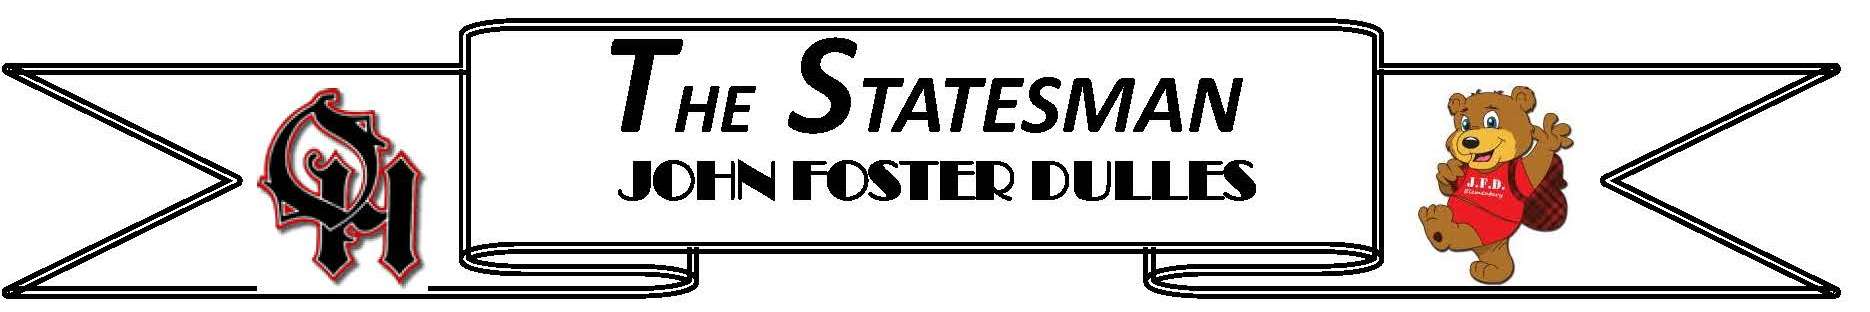 The Statesman banner logo